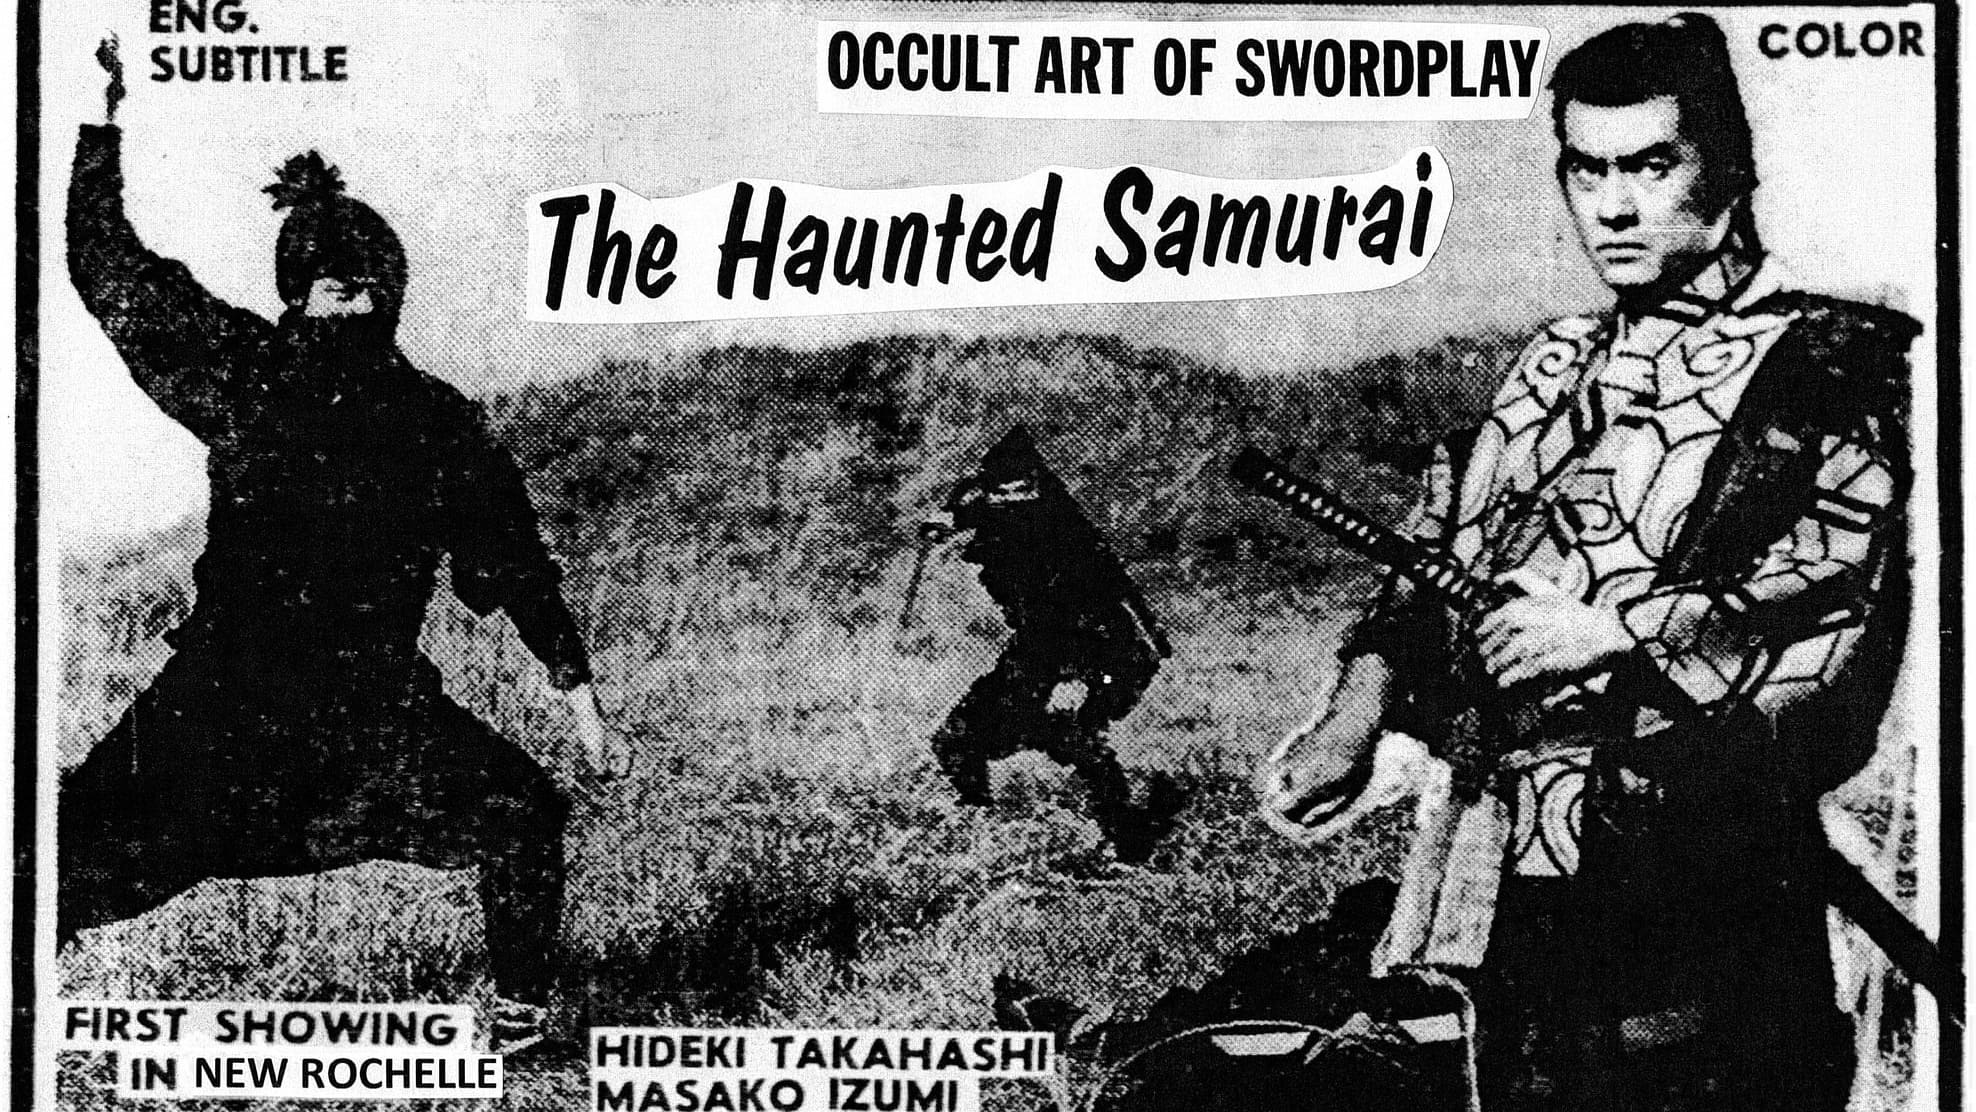 Haunted Samurai (1970)